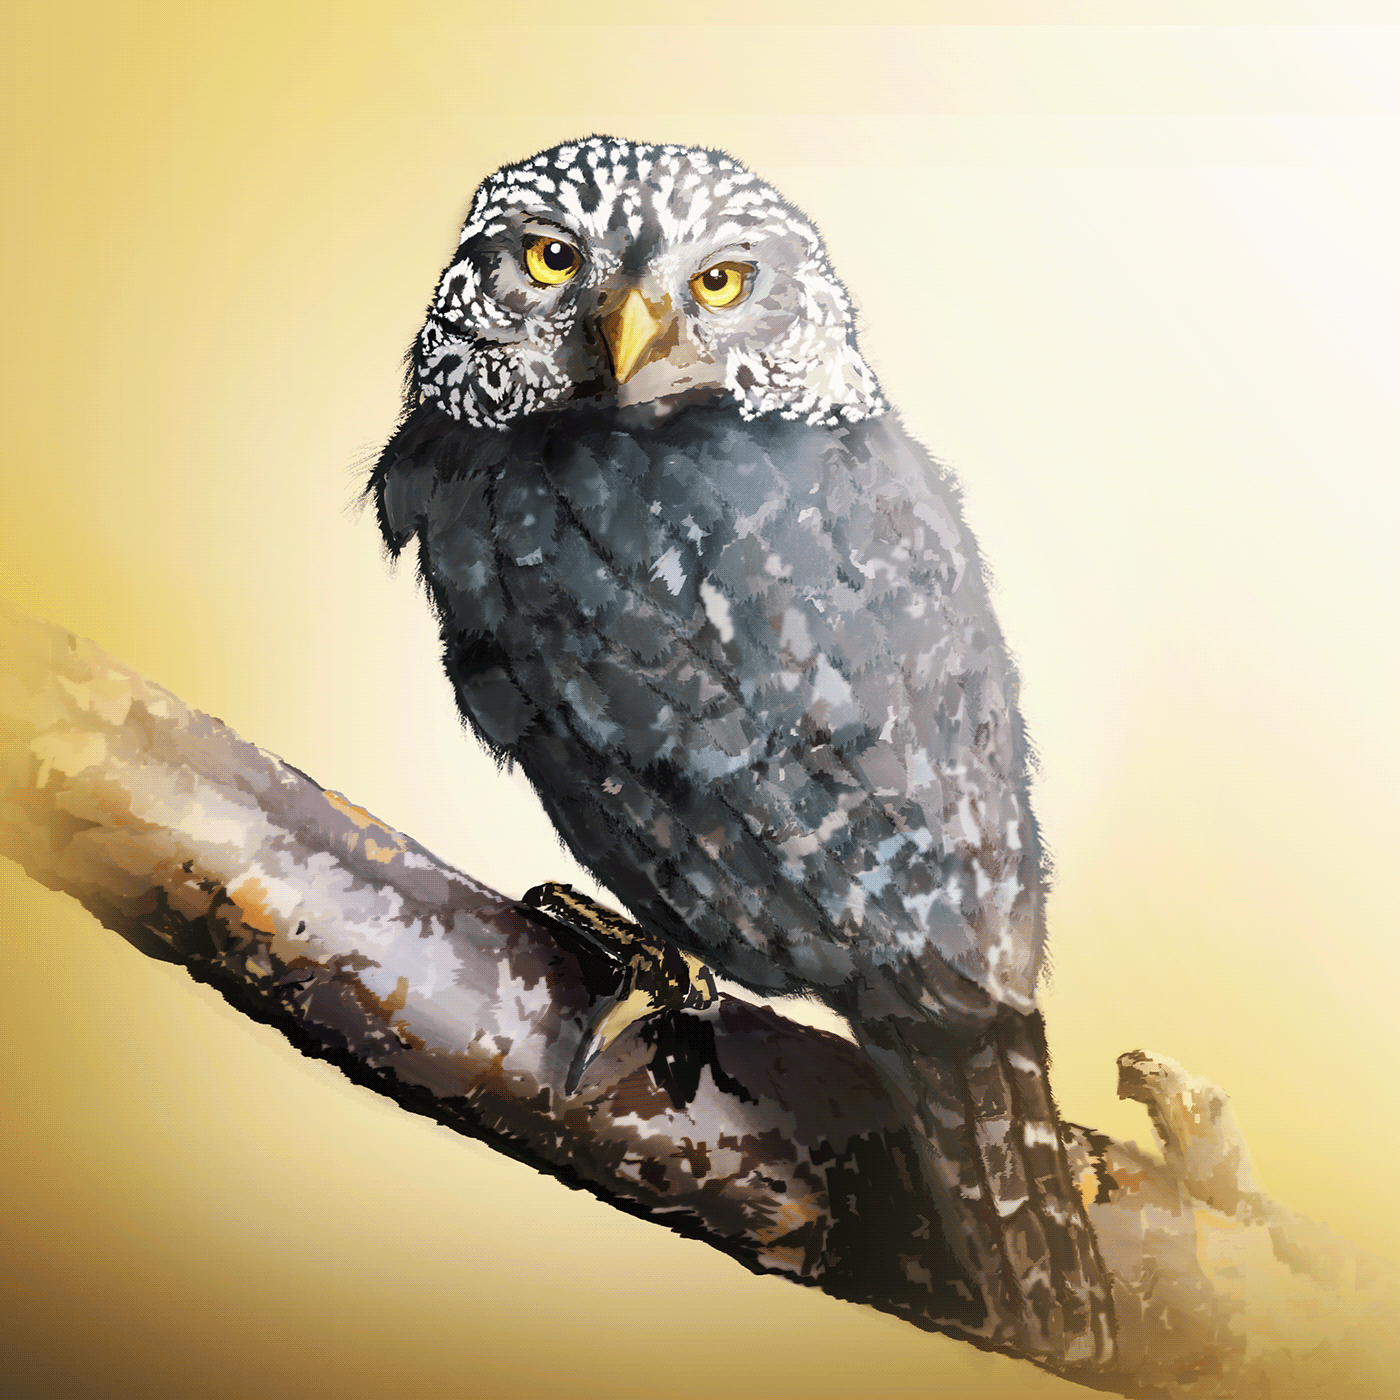 animal ave buho Digital ilustration ilustration owl peru photoshop bird Drawing 